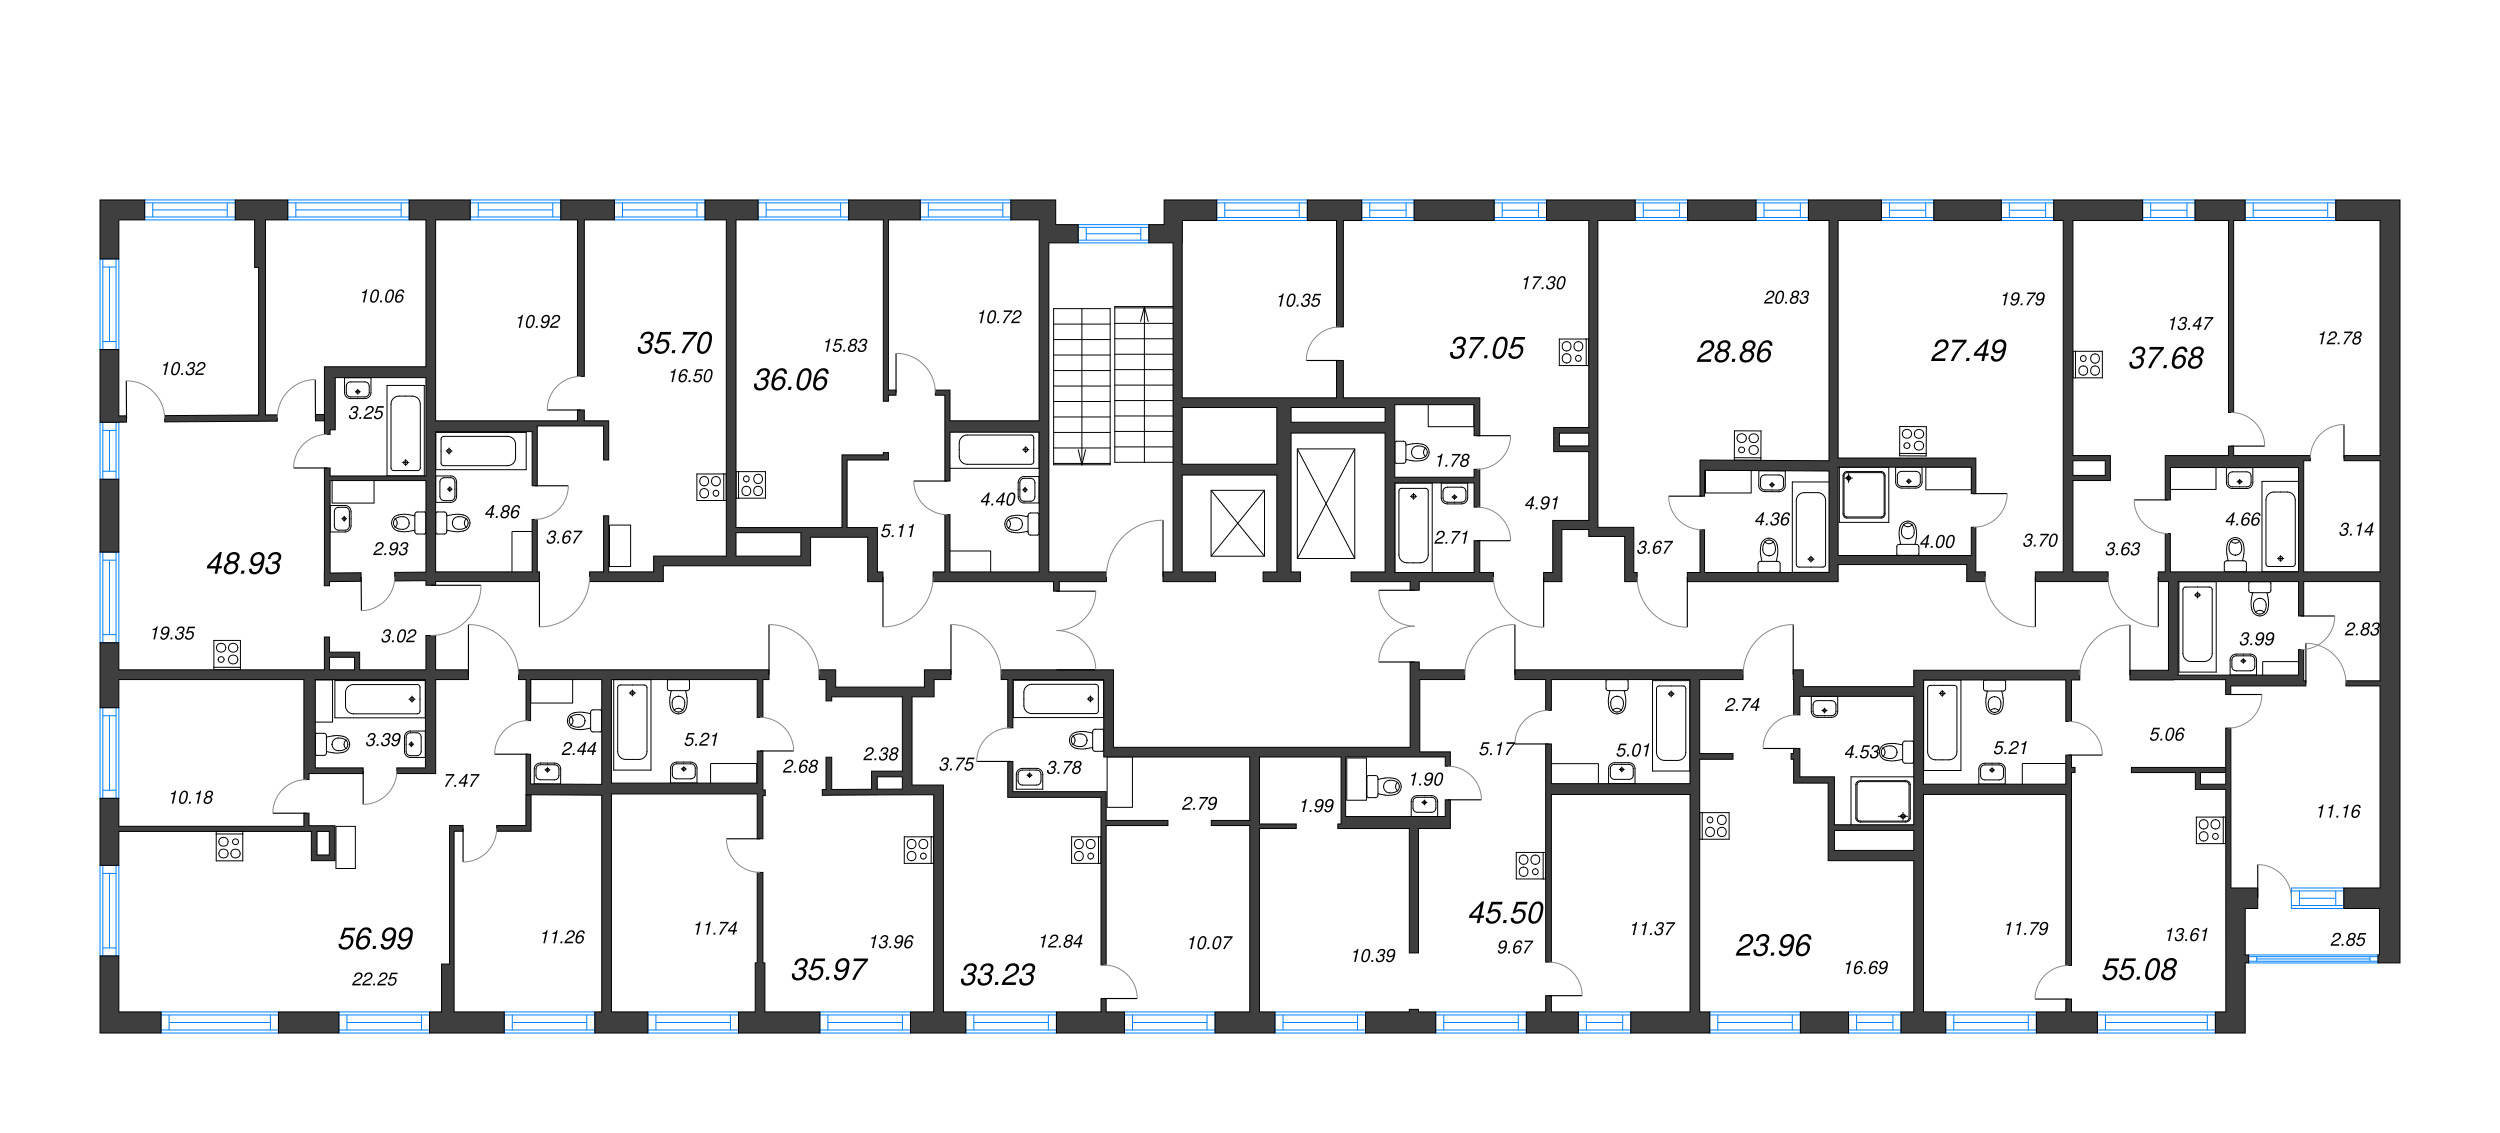 Квартира-студия, 23.96 м² в ЖК "ID Murino III" - планировка этажа